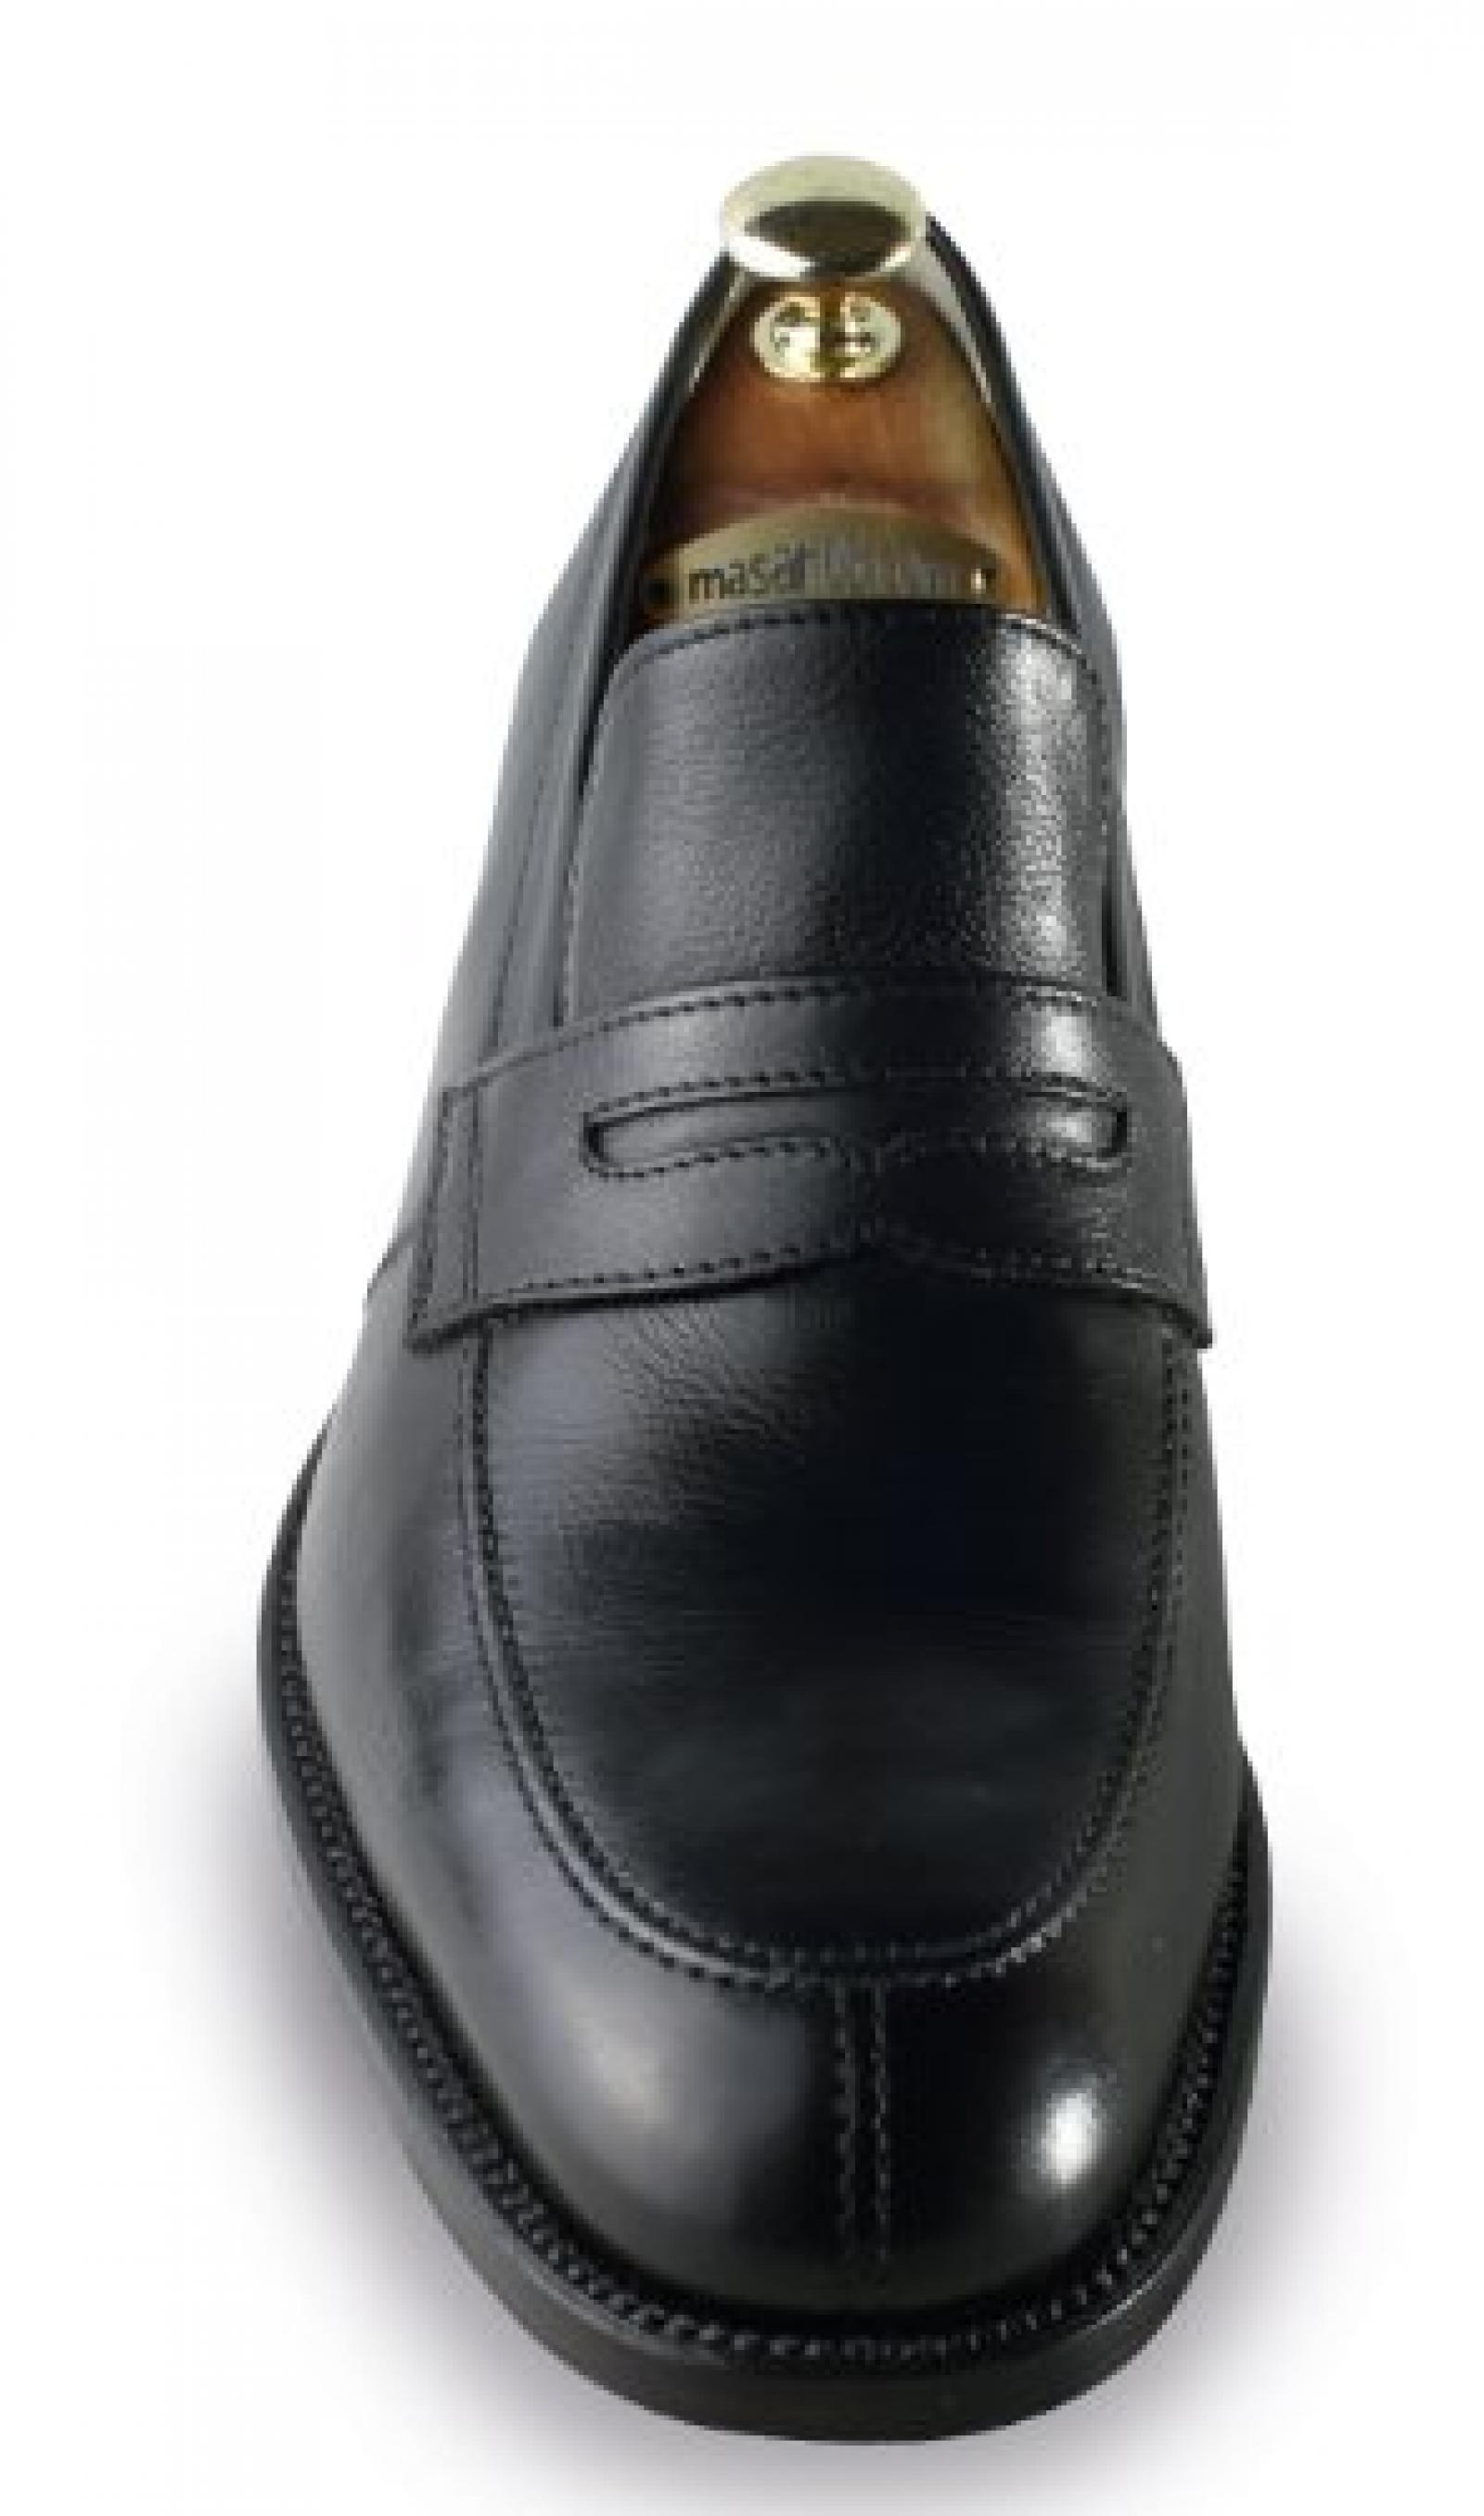 Masaltos - Schuhe für Männer erhöhen auf unsichtbare Weise Ihre Körpergrösse bis zu 7 cm. Modell Standford 